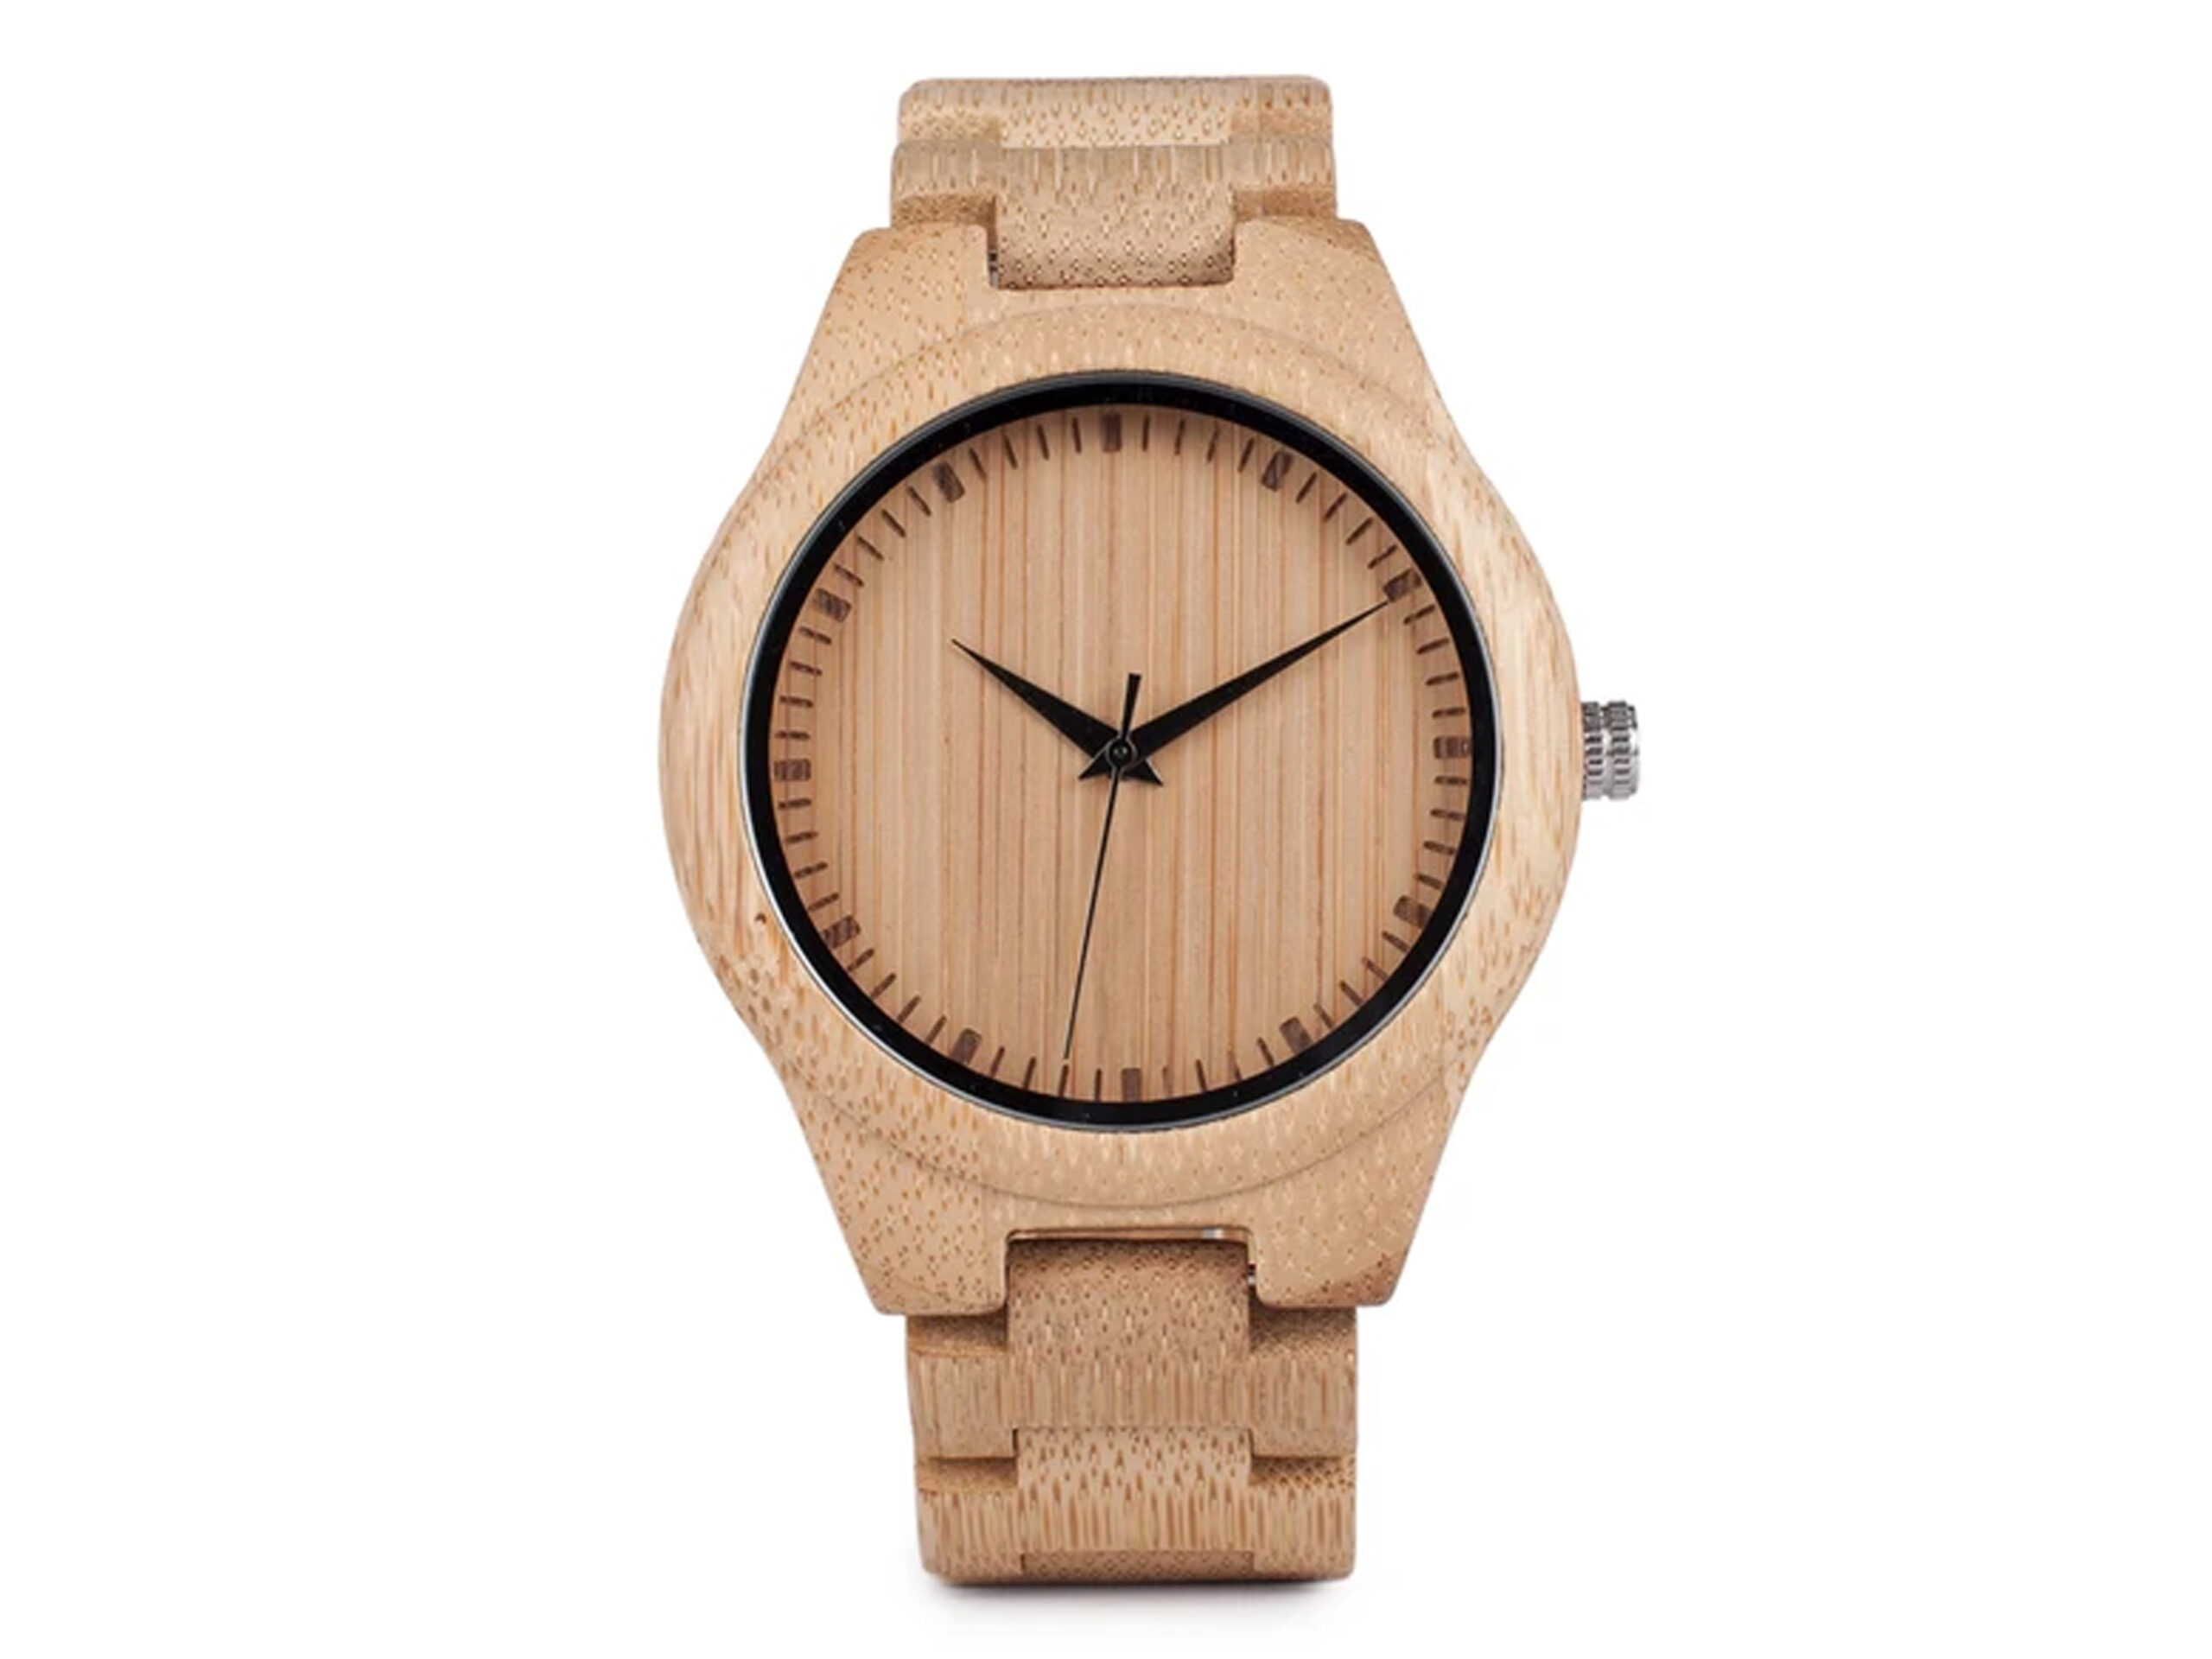 Relógio masculino personalizado em madeira de bambu